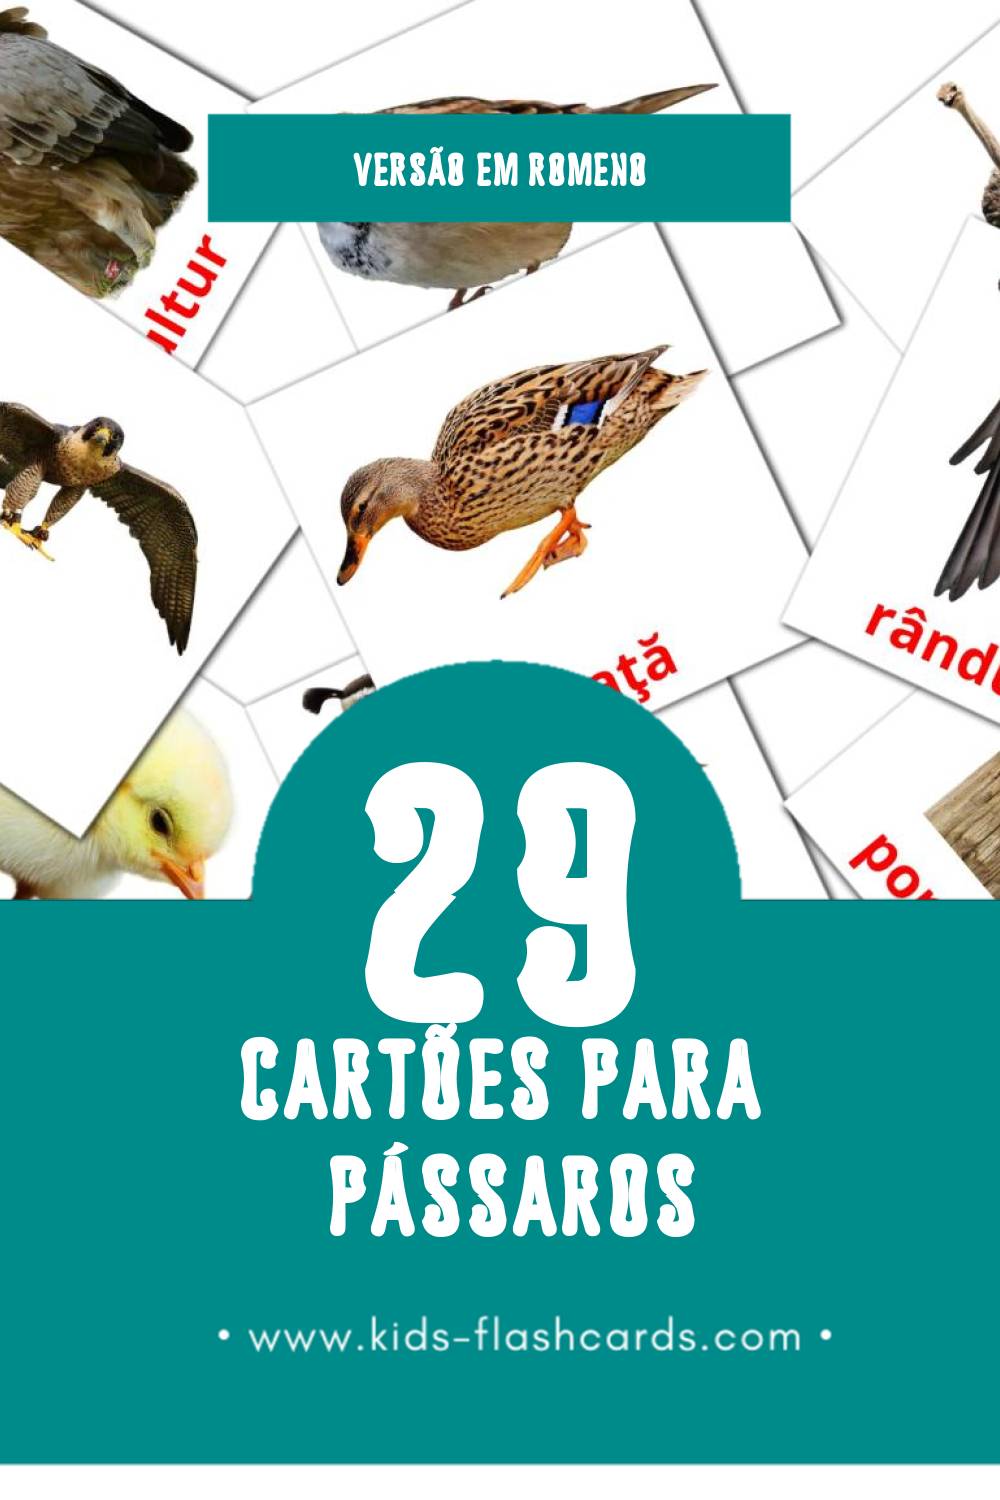 Flashcards de Păsări Visuais para Toddlers (29 cartões em Romeno)